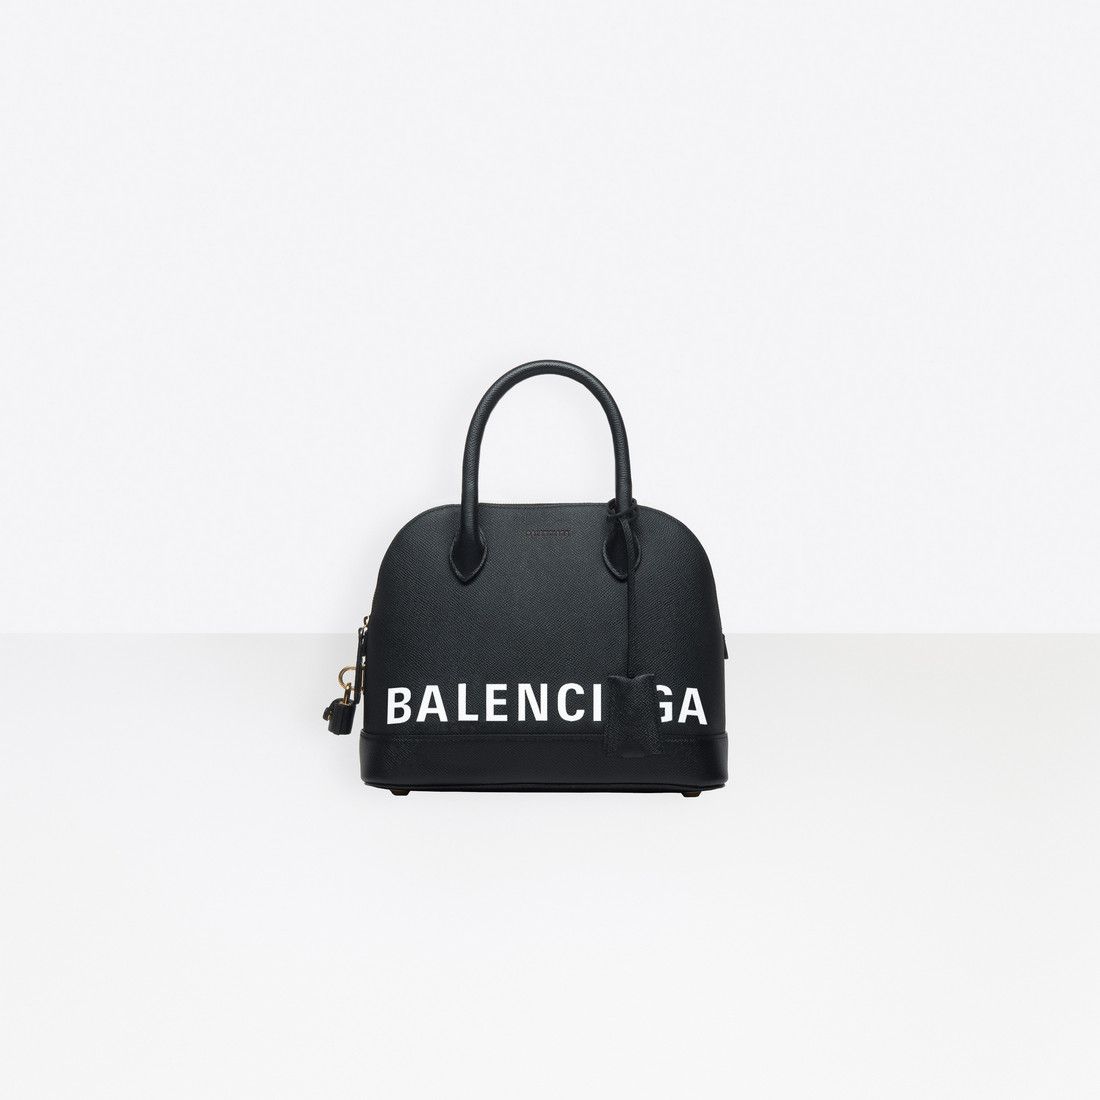 Balenciaga - Ville Small Top Handle Bag Black / White | Balenciaga